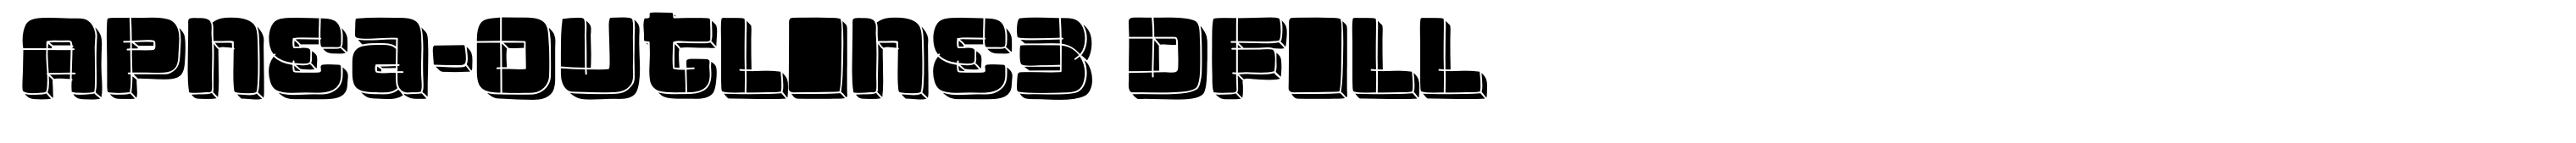 Apnea-Outline3 DFill